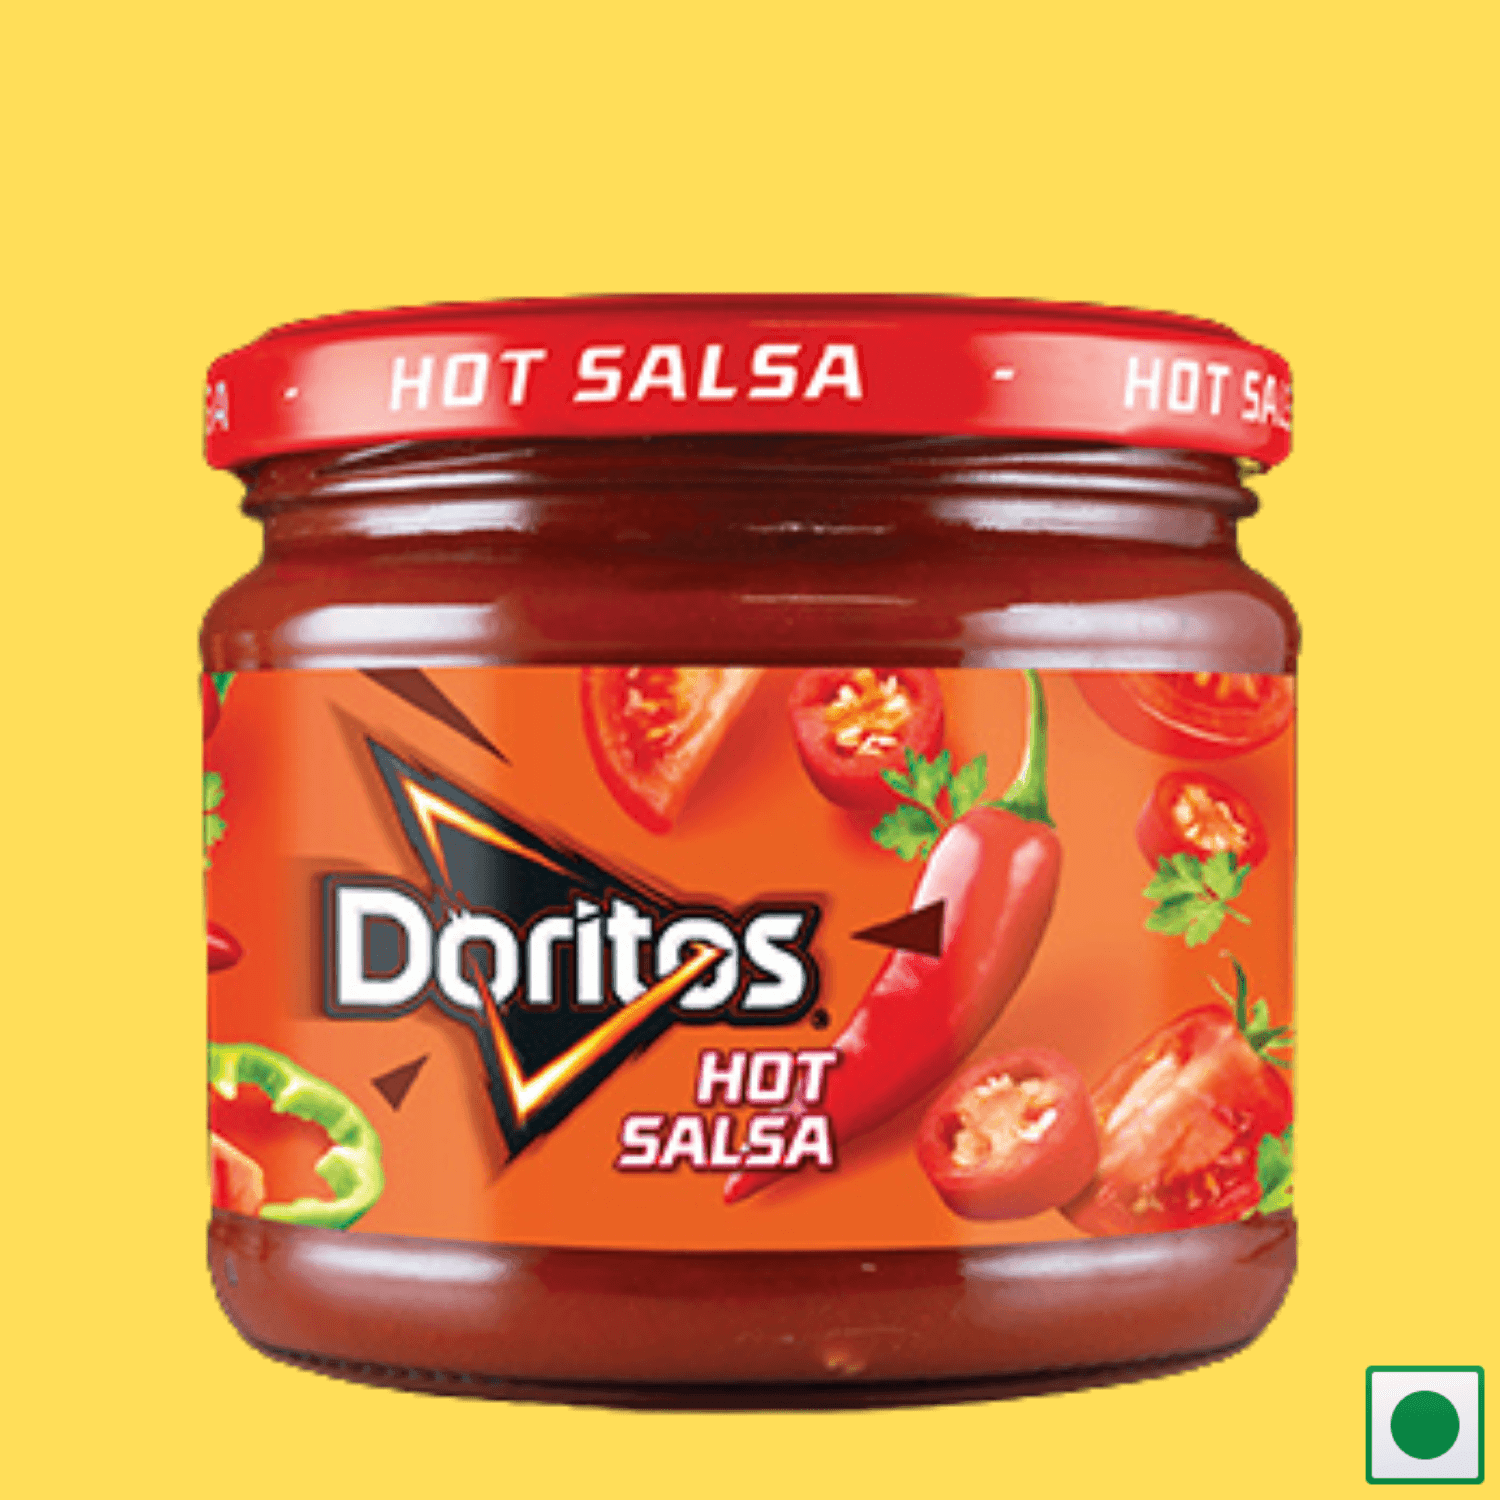 Doritos Hot Salsa Jar, 300g (Imported) - Super 7 Mart